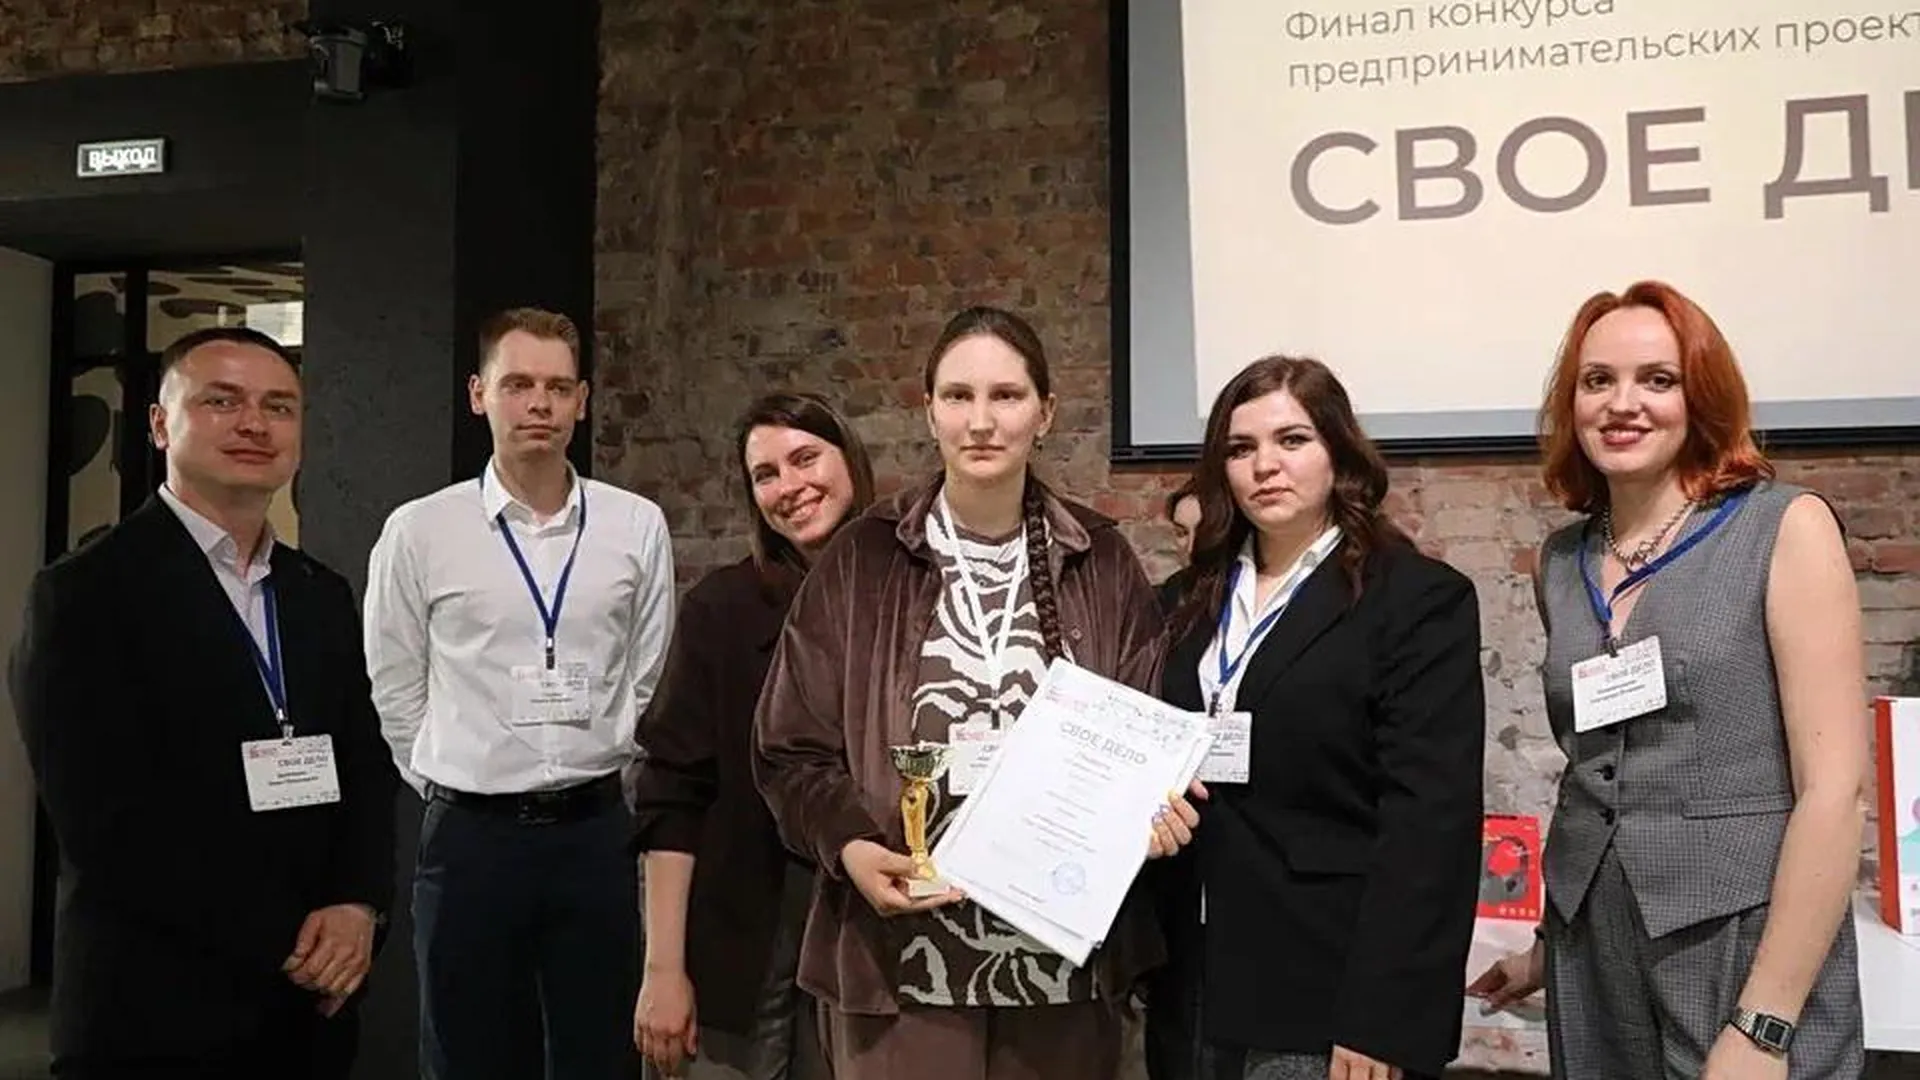 Студентка из Бронниц победила на конкурсе предпринимательских проектов